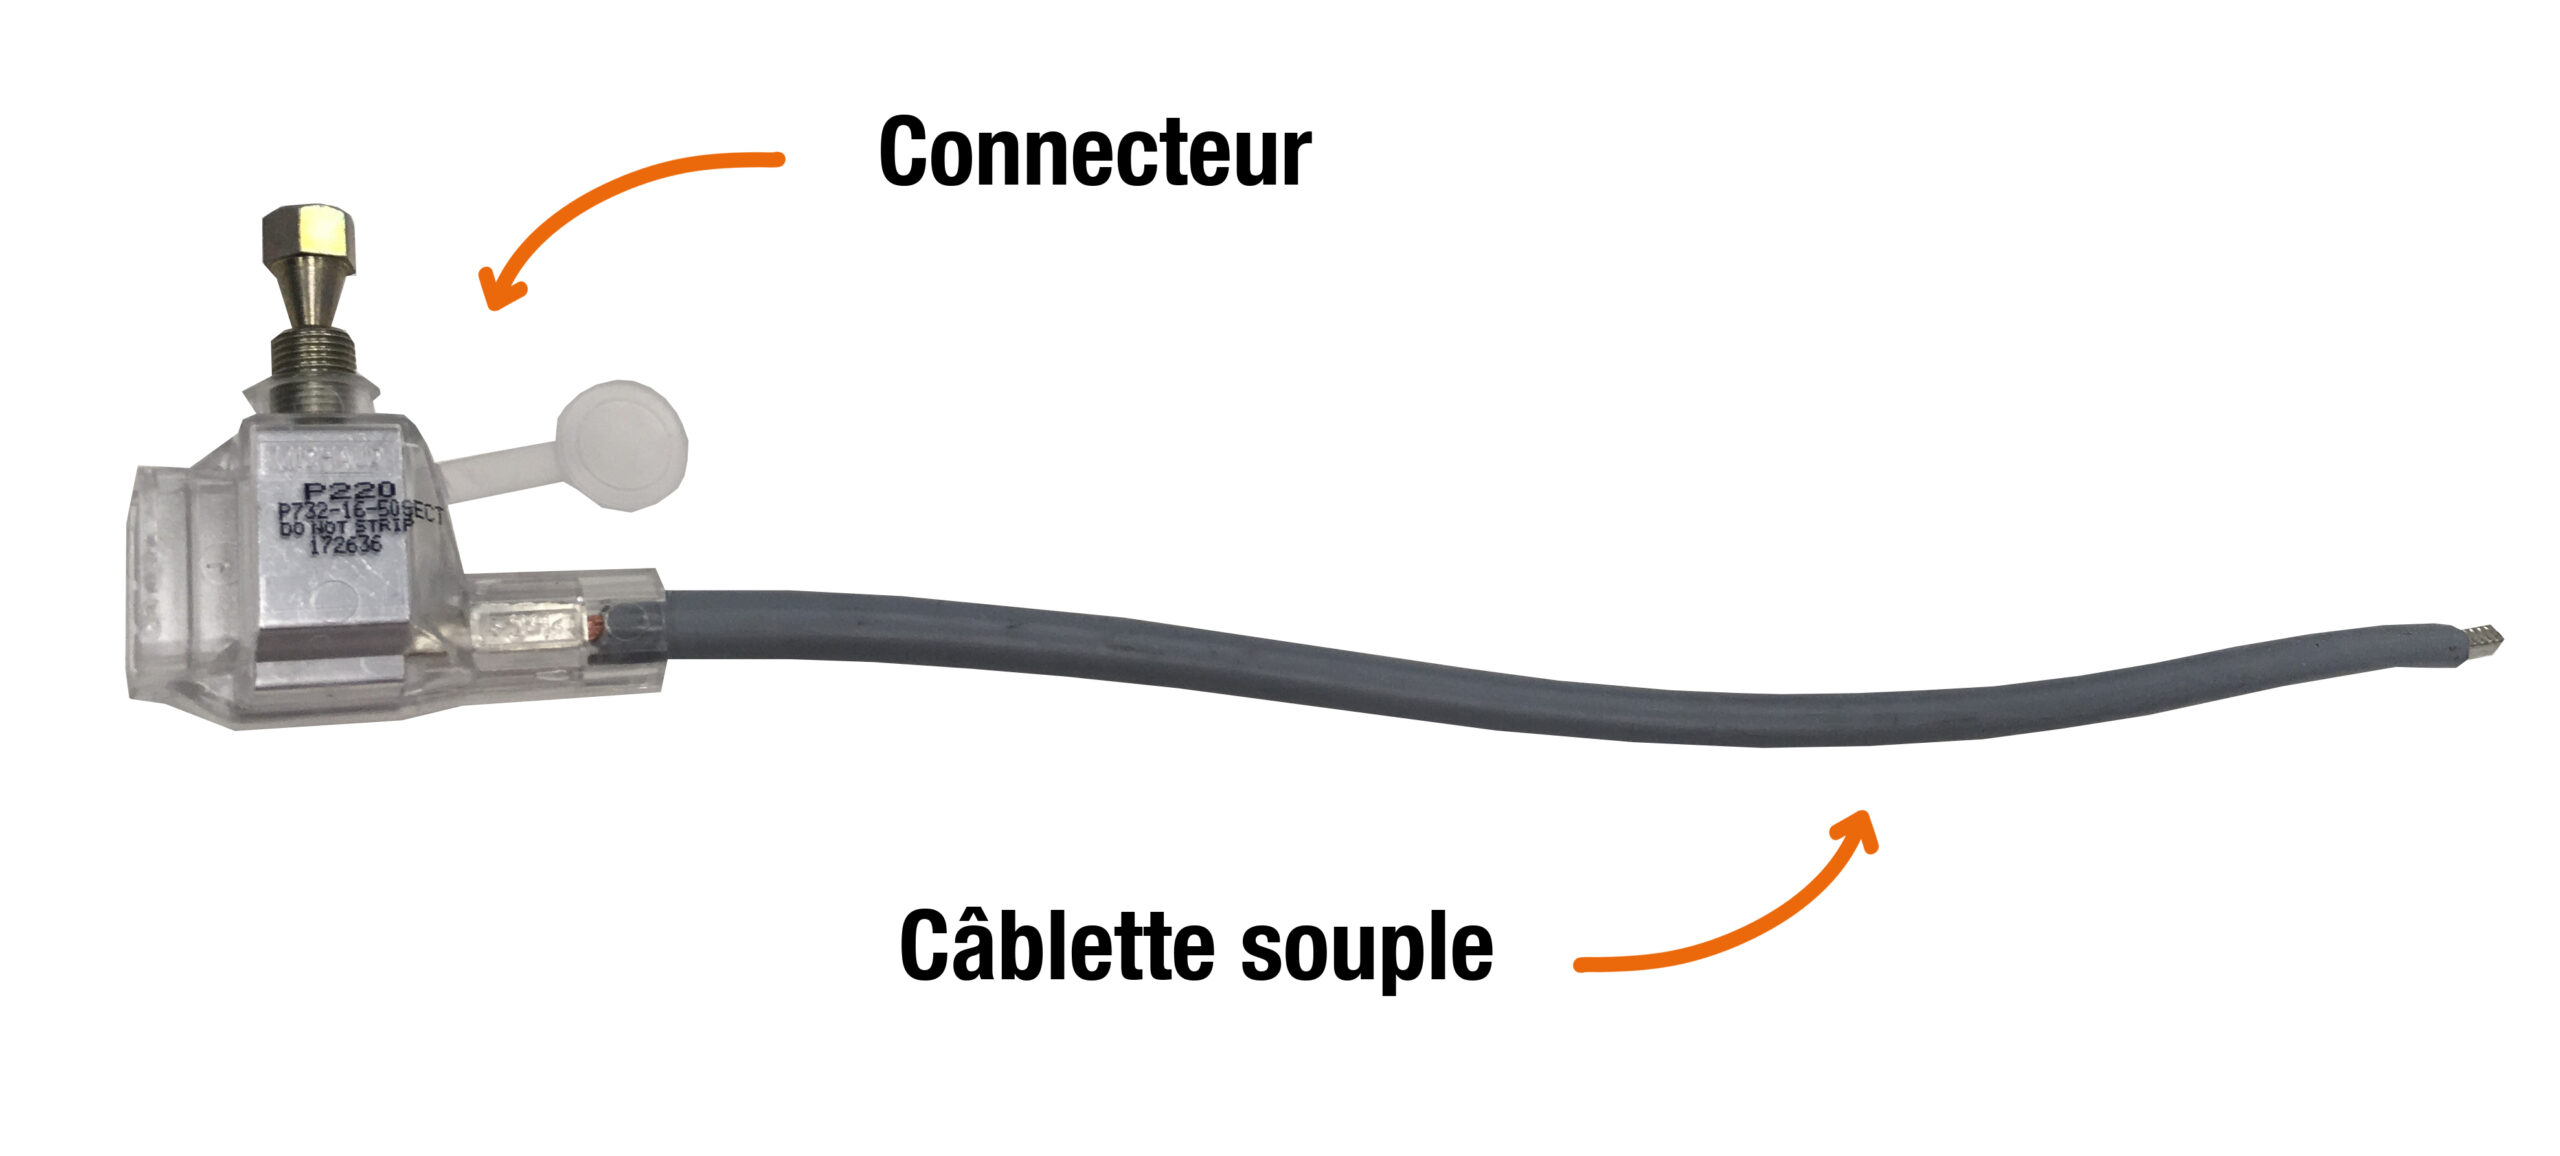 Le schéma montre la partie connecteur et la partie câblette souple d'un EBCP, utilisé pour le raccordement au réseau électrique.